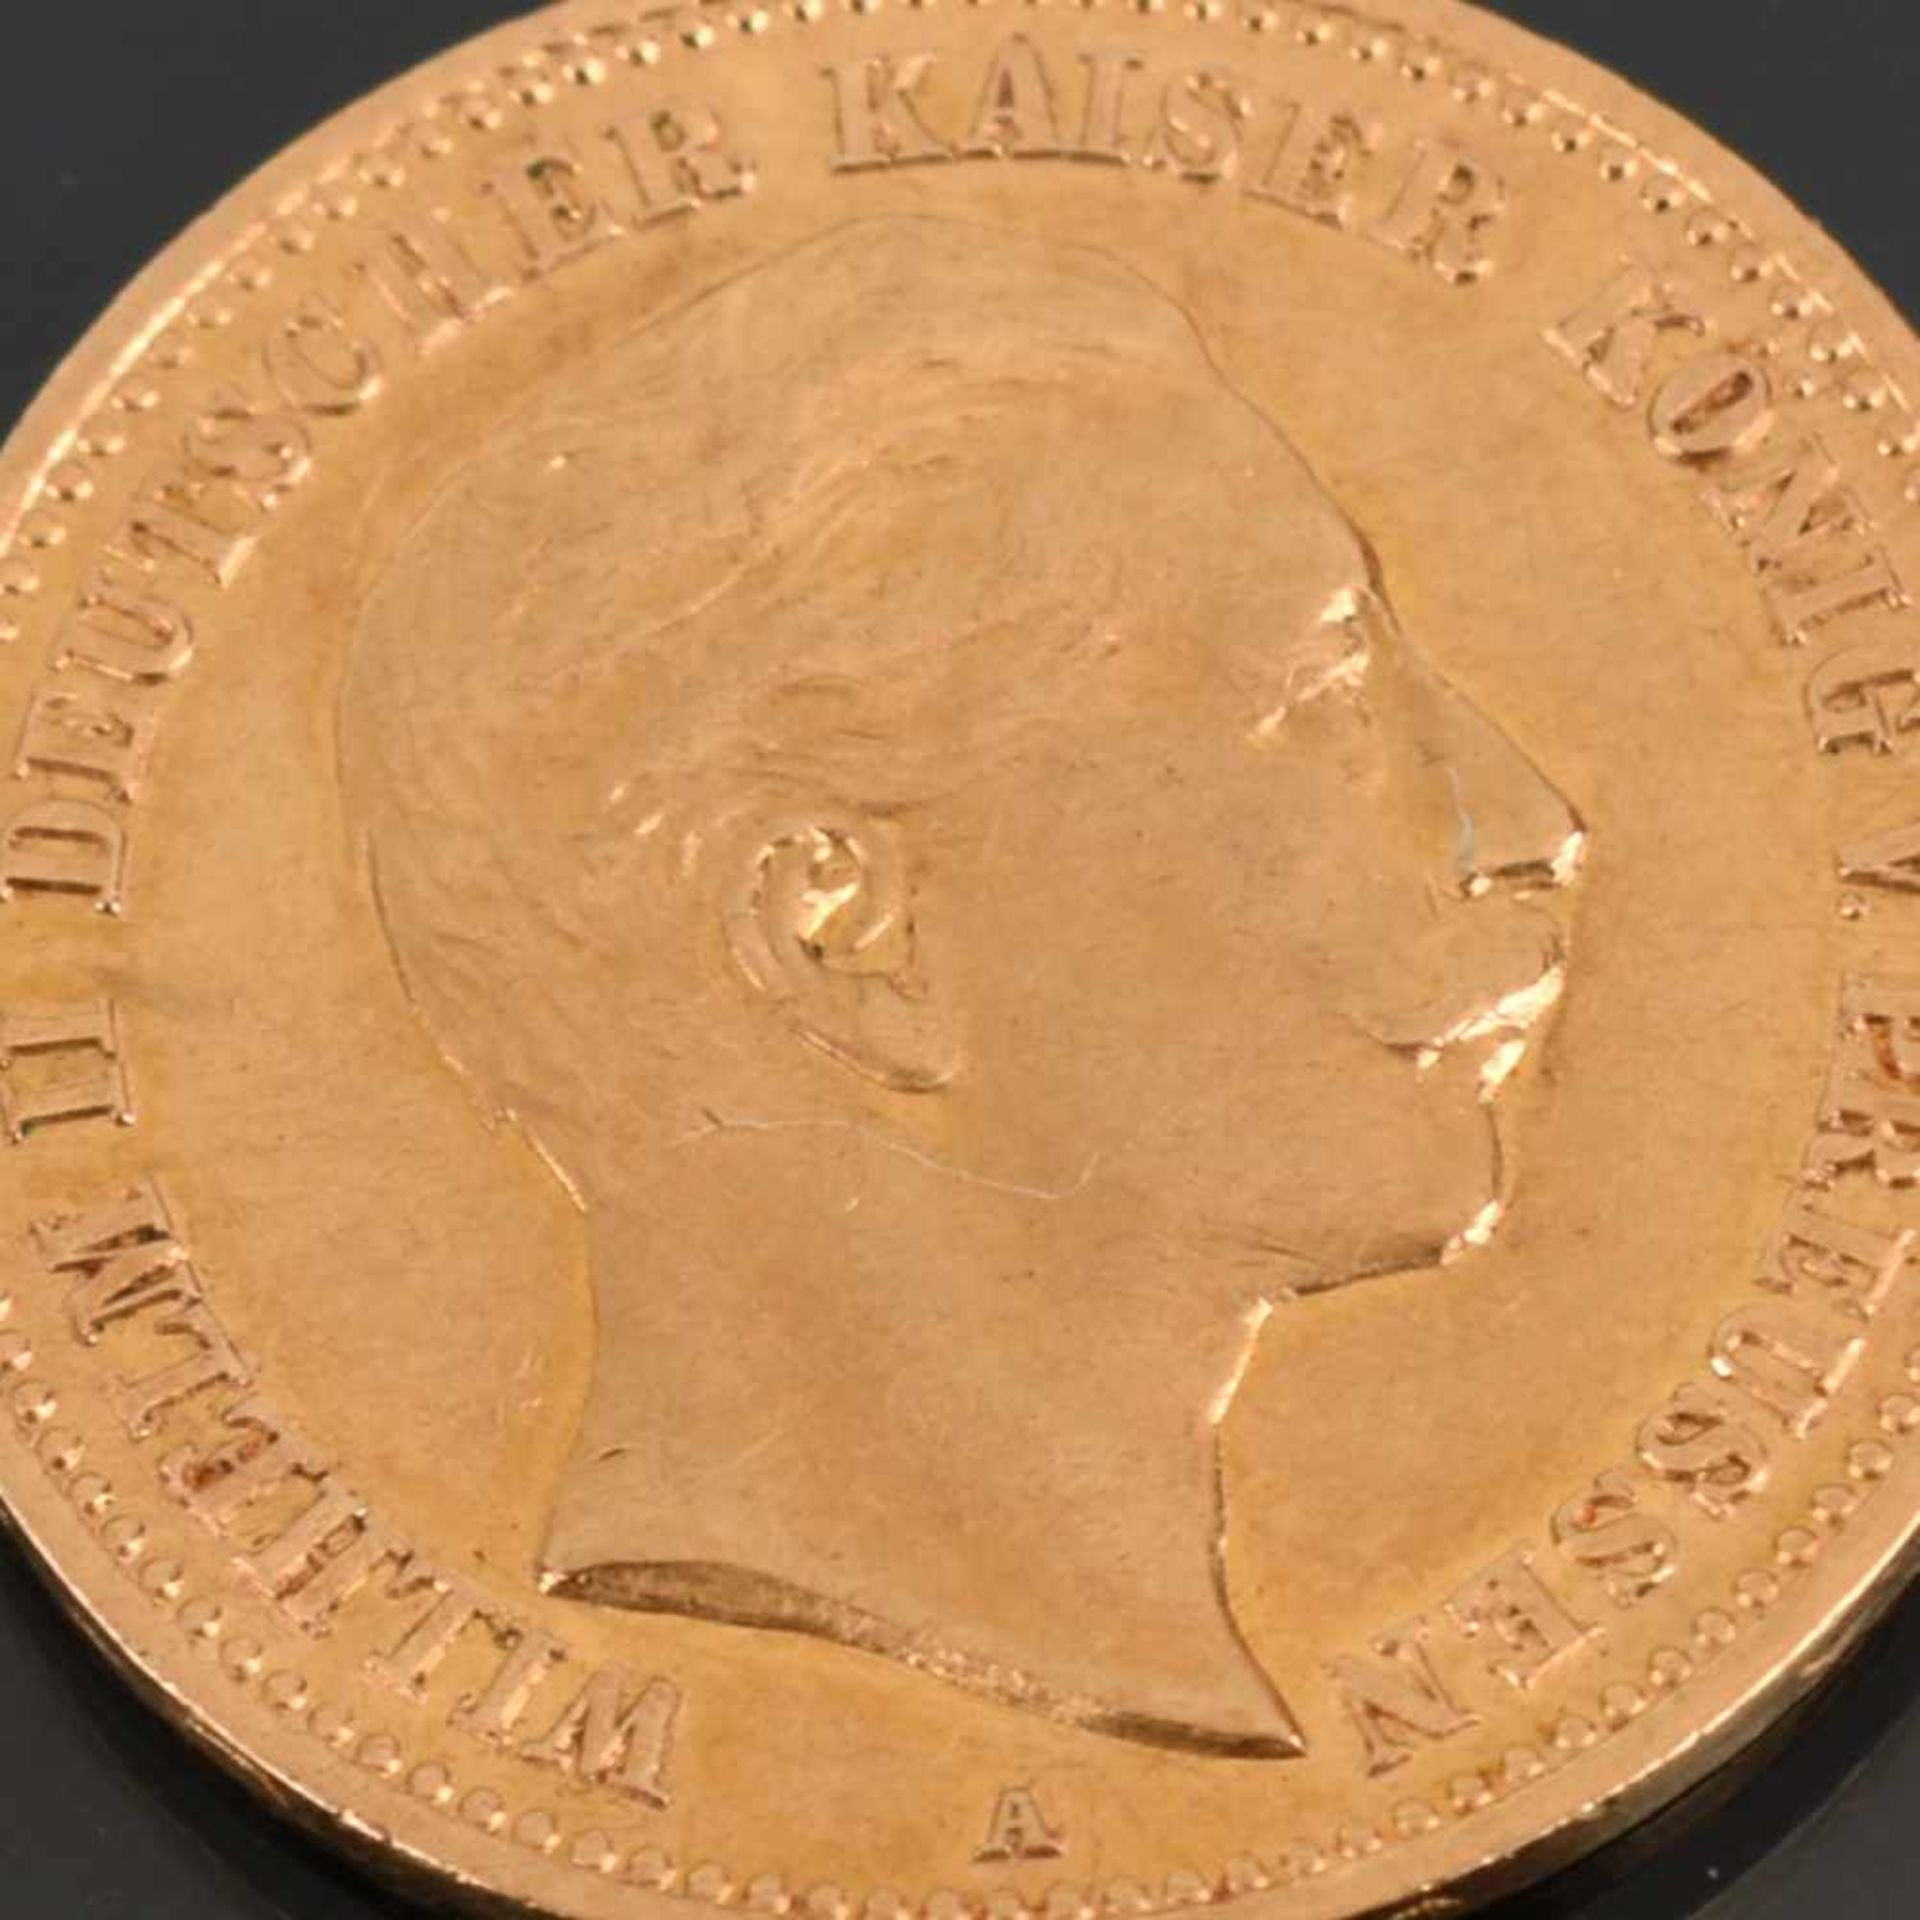 Goldmünze Kaiserreich - Preußen 1907 10 Mark in Gold, 900/1000, 3,98 g, D ca. 19,5 mm, av. Wilhelm